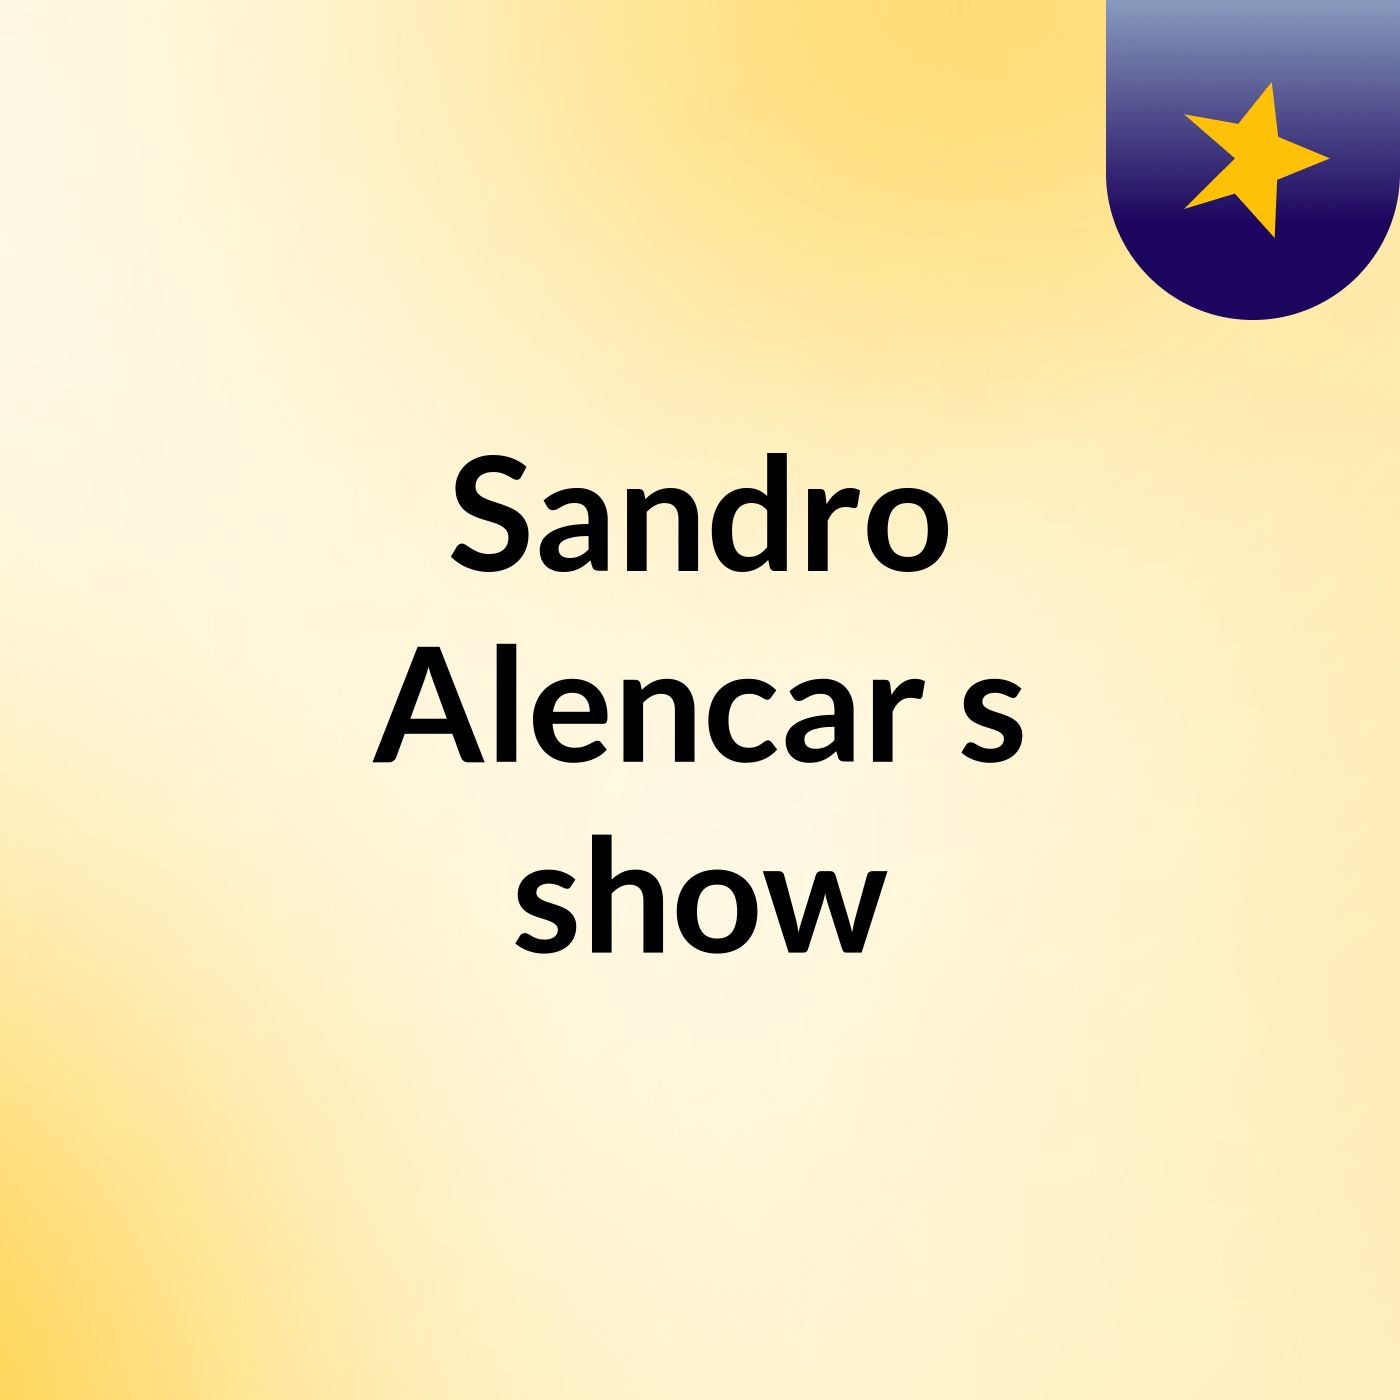 Sandro Alencar's show